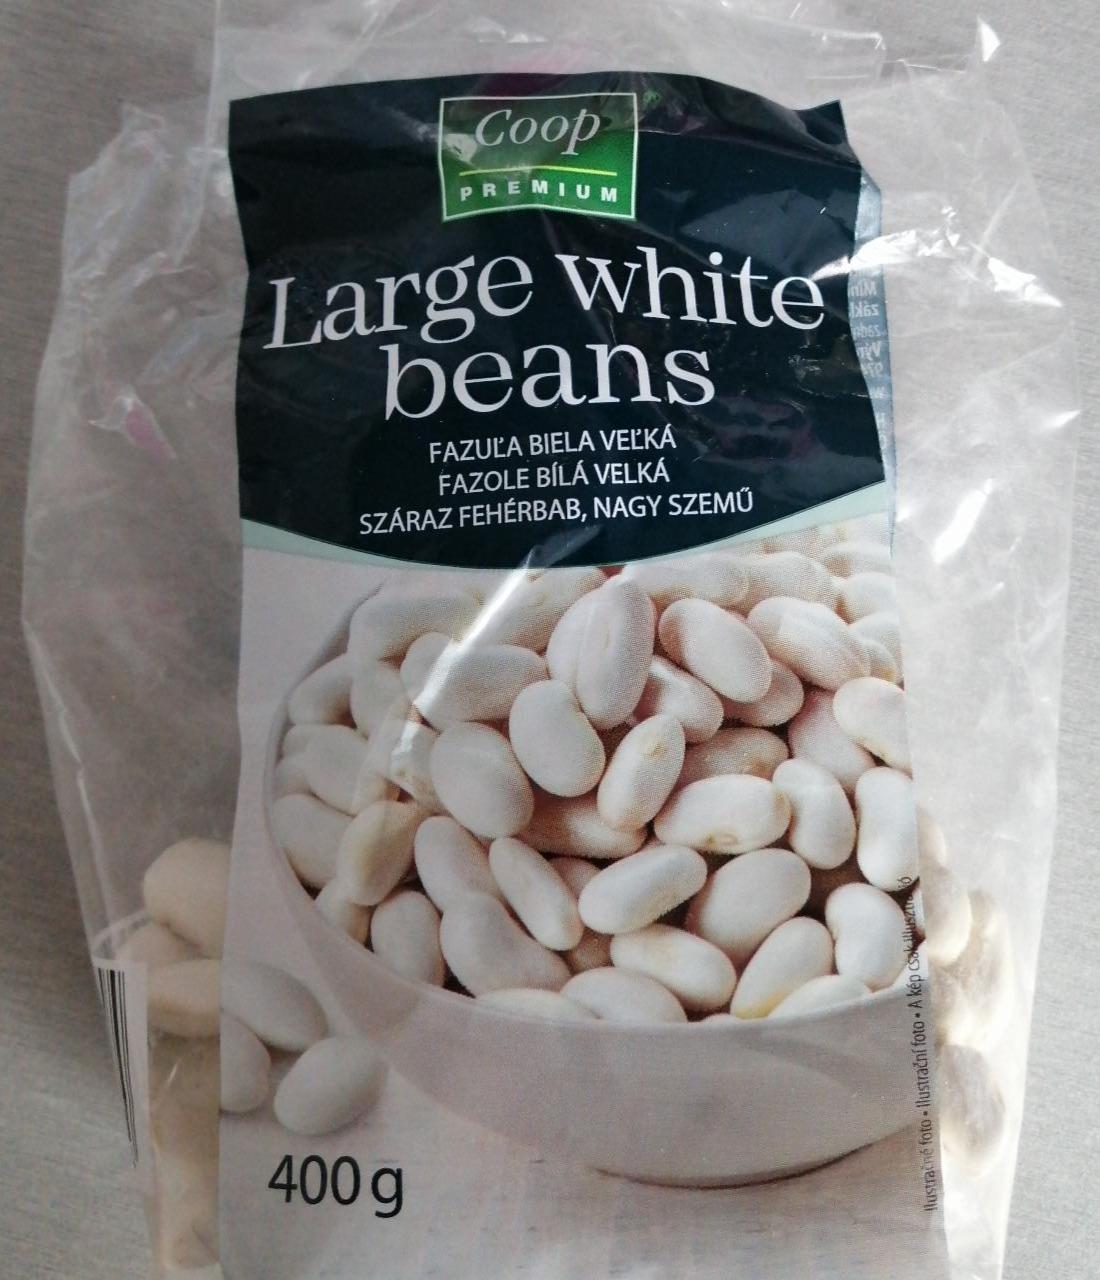 Fotografie - Large white beans Coop Premium